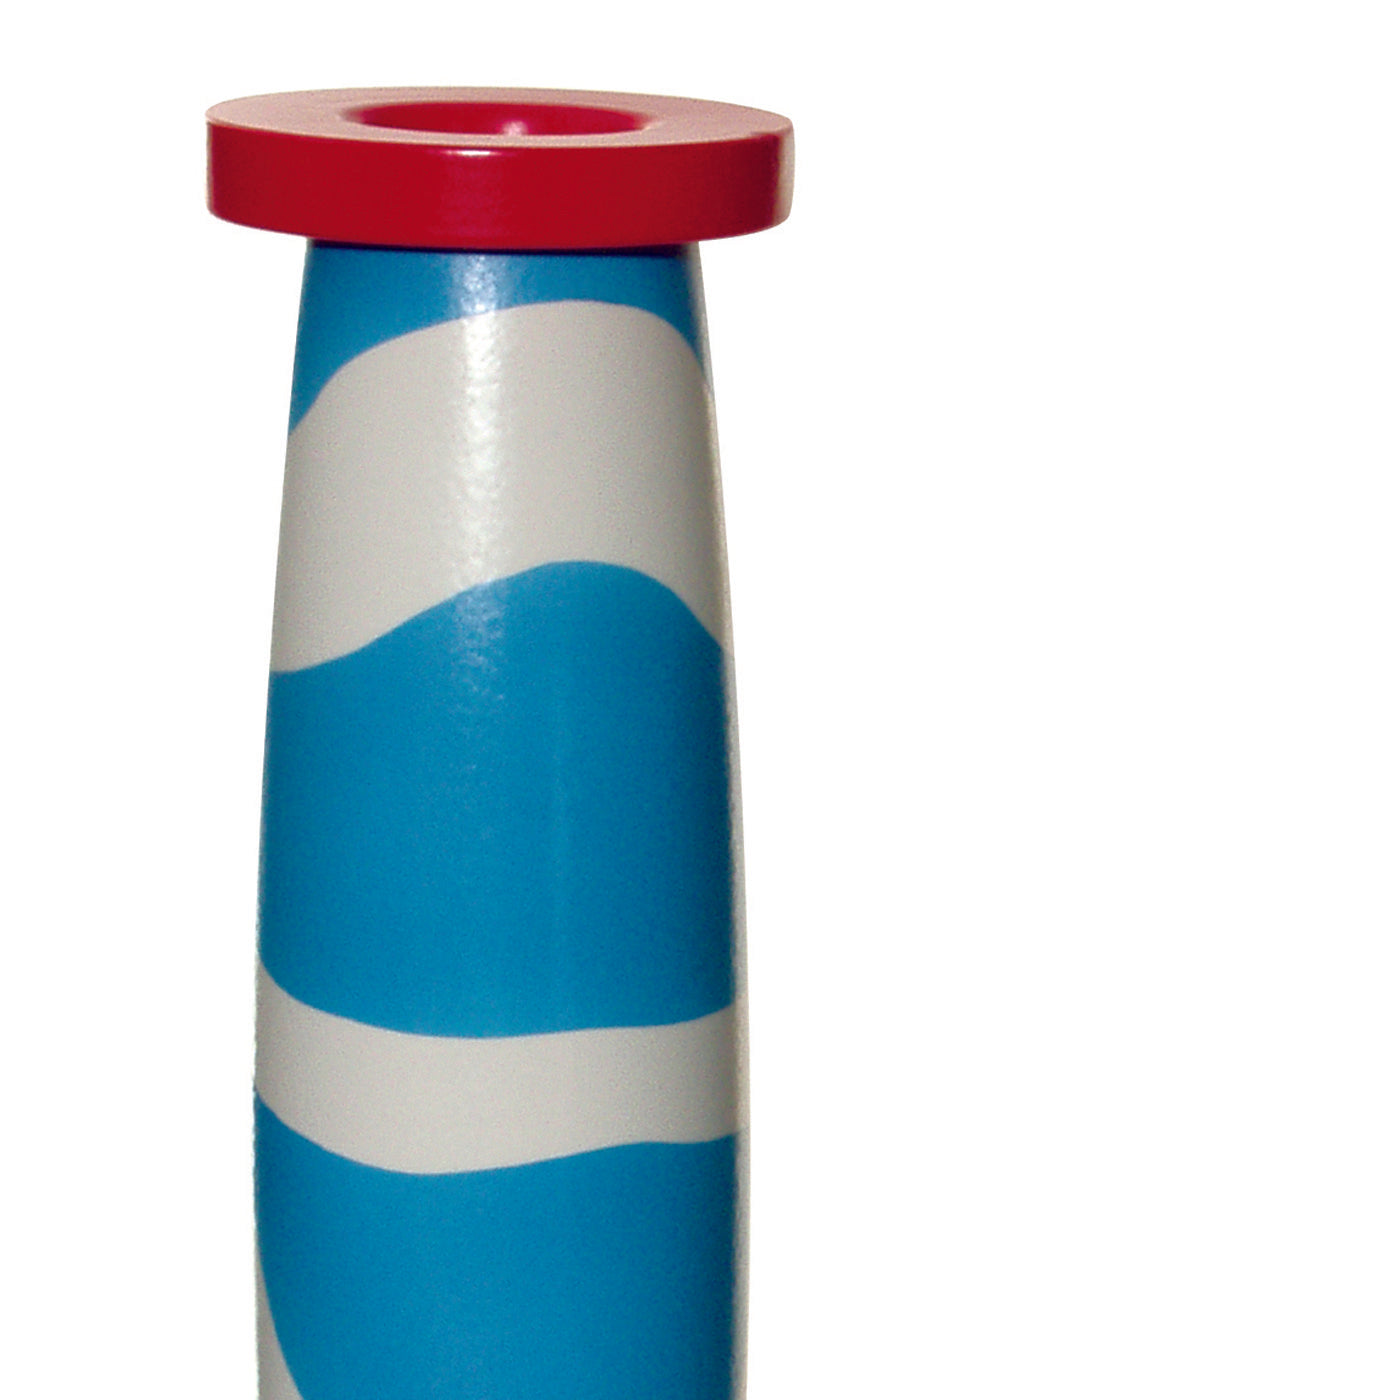 Rot-blau-weiße Vase von George J. Sowden - Alternative Ansicht 1